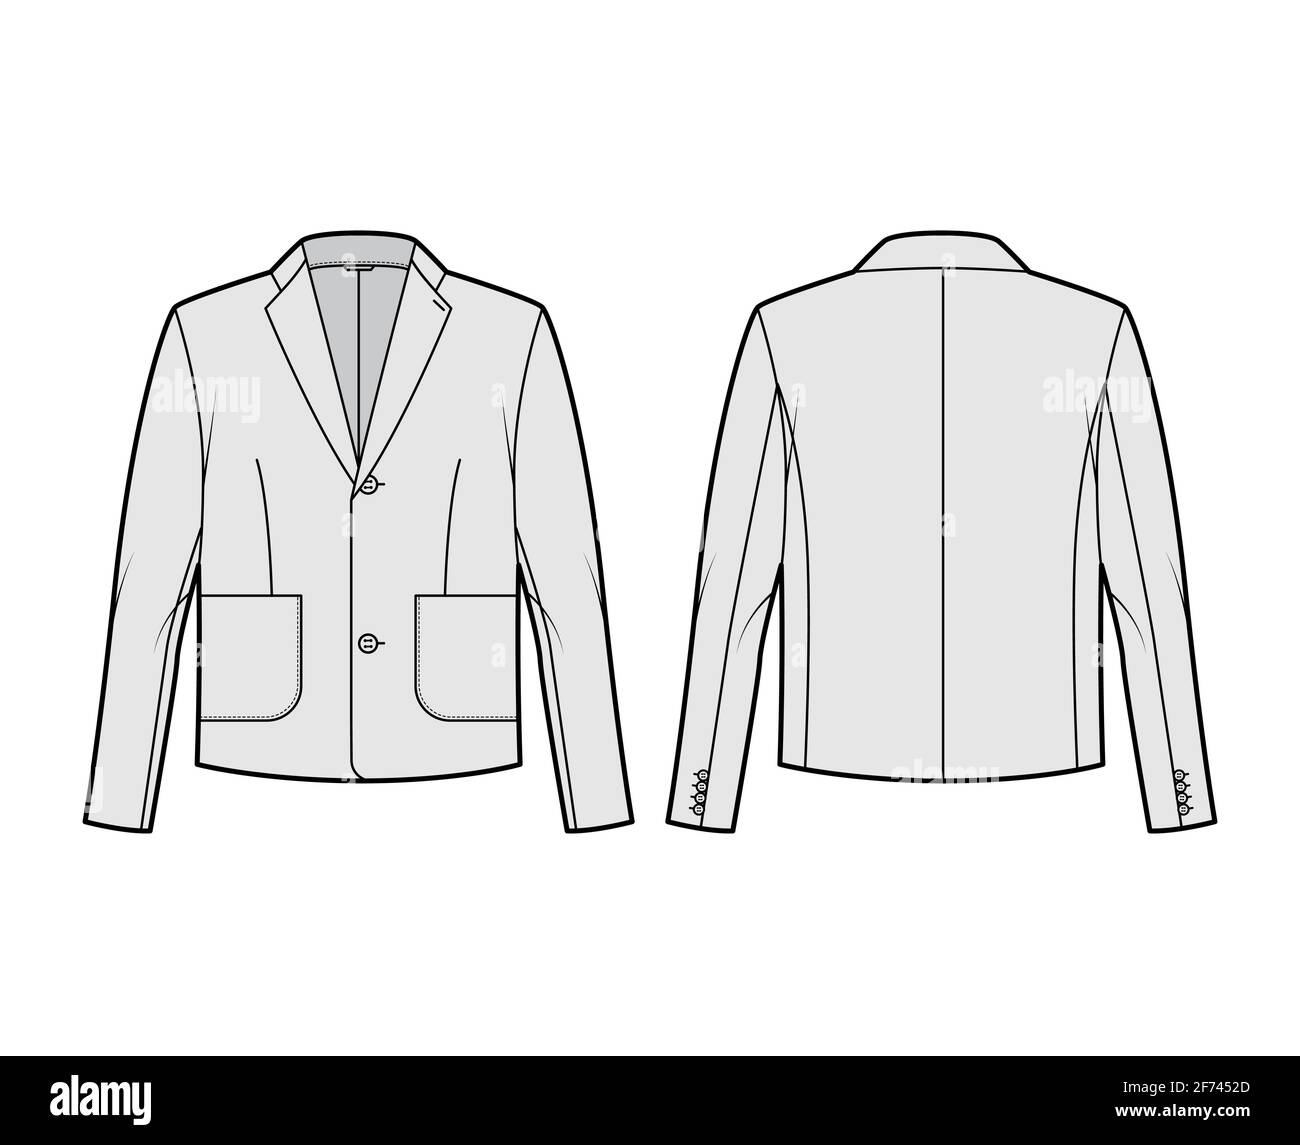 Blazer chaqueta traje técnico ilustración de moda con manga larga, cuello  de solapa con muesca, bolsillos tipo parche, cuerpo de gran tamaño.  Plantilla de abrigo plano en la parte delantera, trasera, color